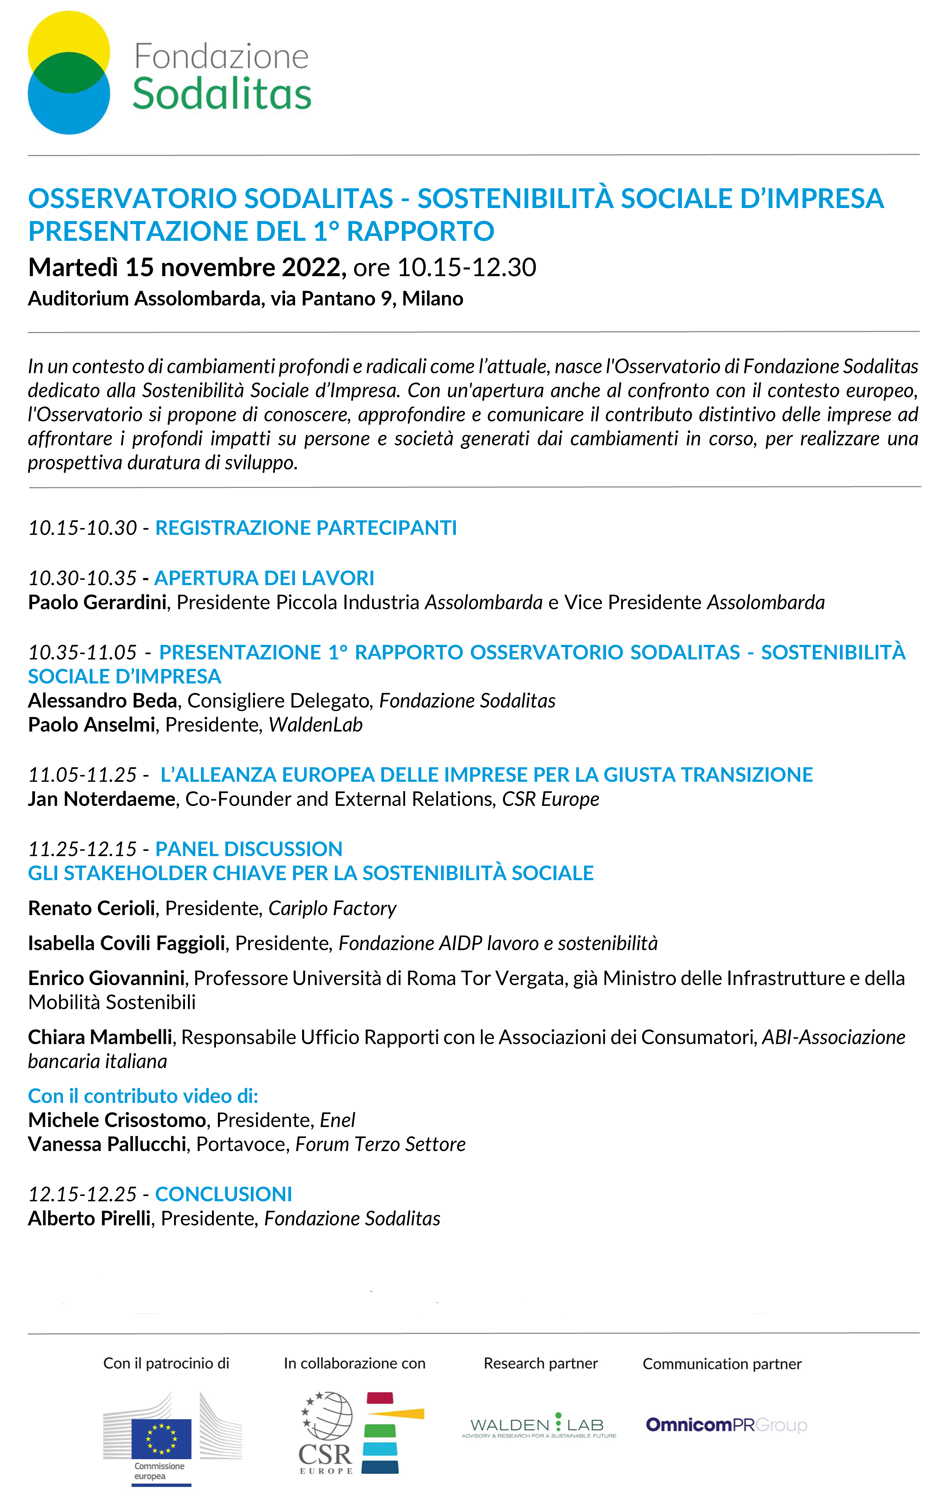 Fondazione Sodalitas - Programma 15 novembre 2022